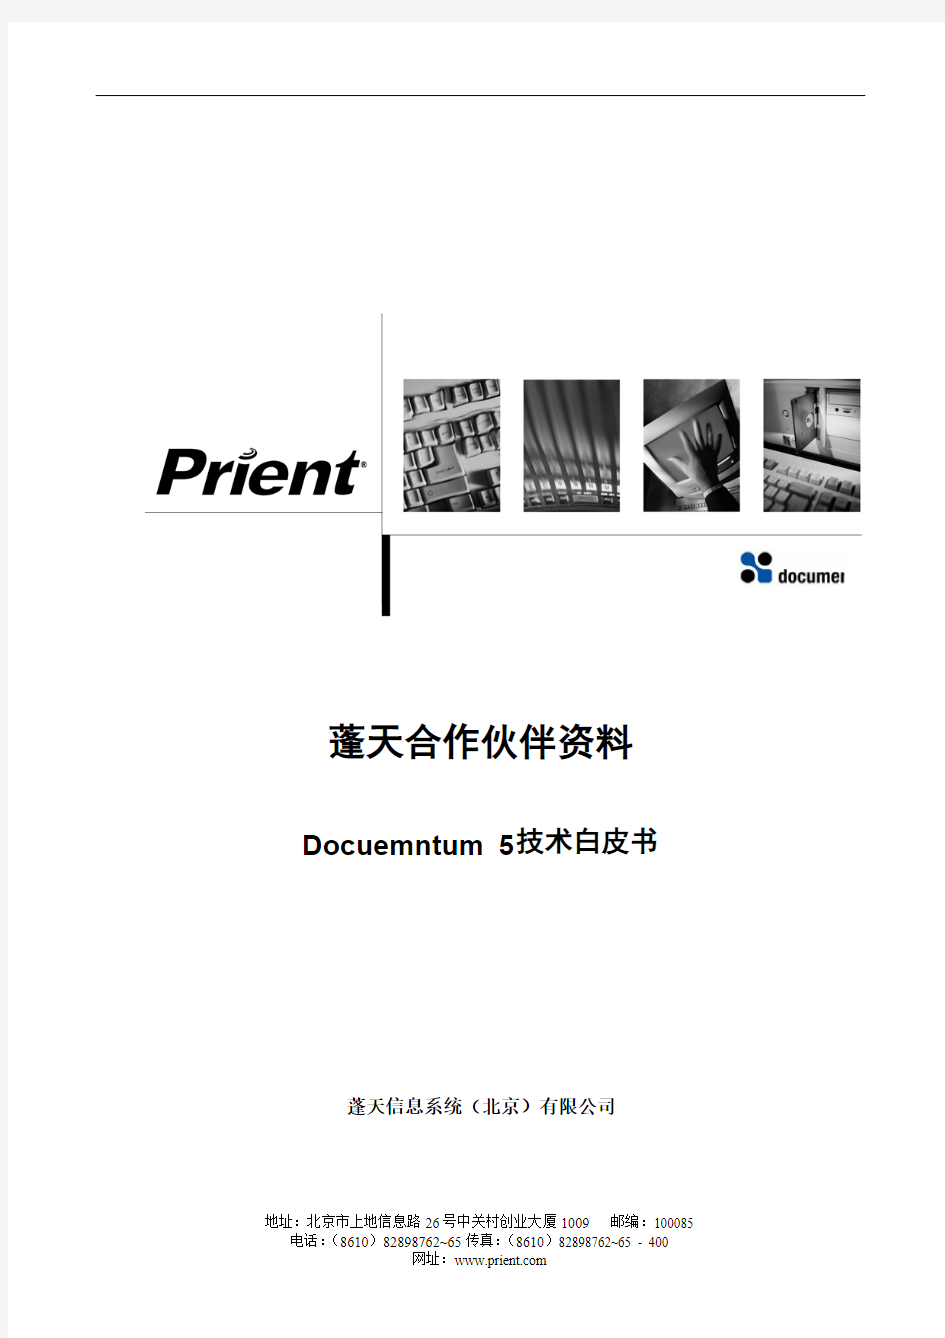 Documentum 5技术白皮书-prient